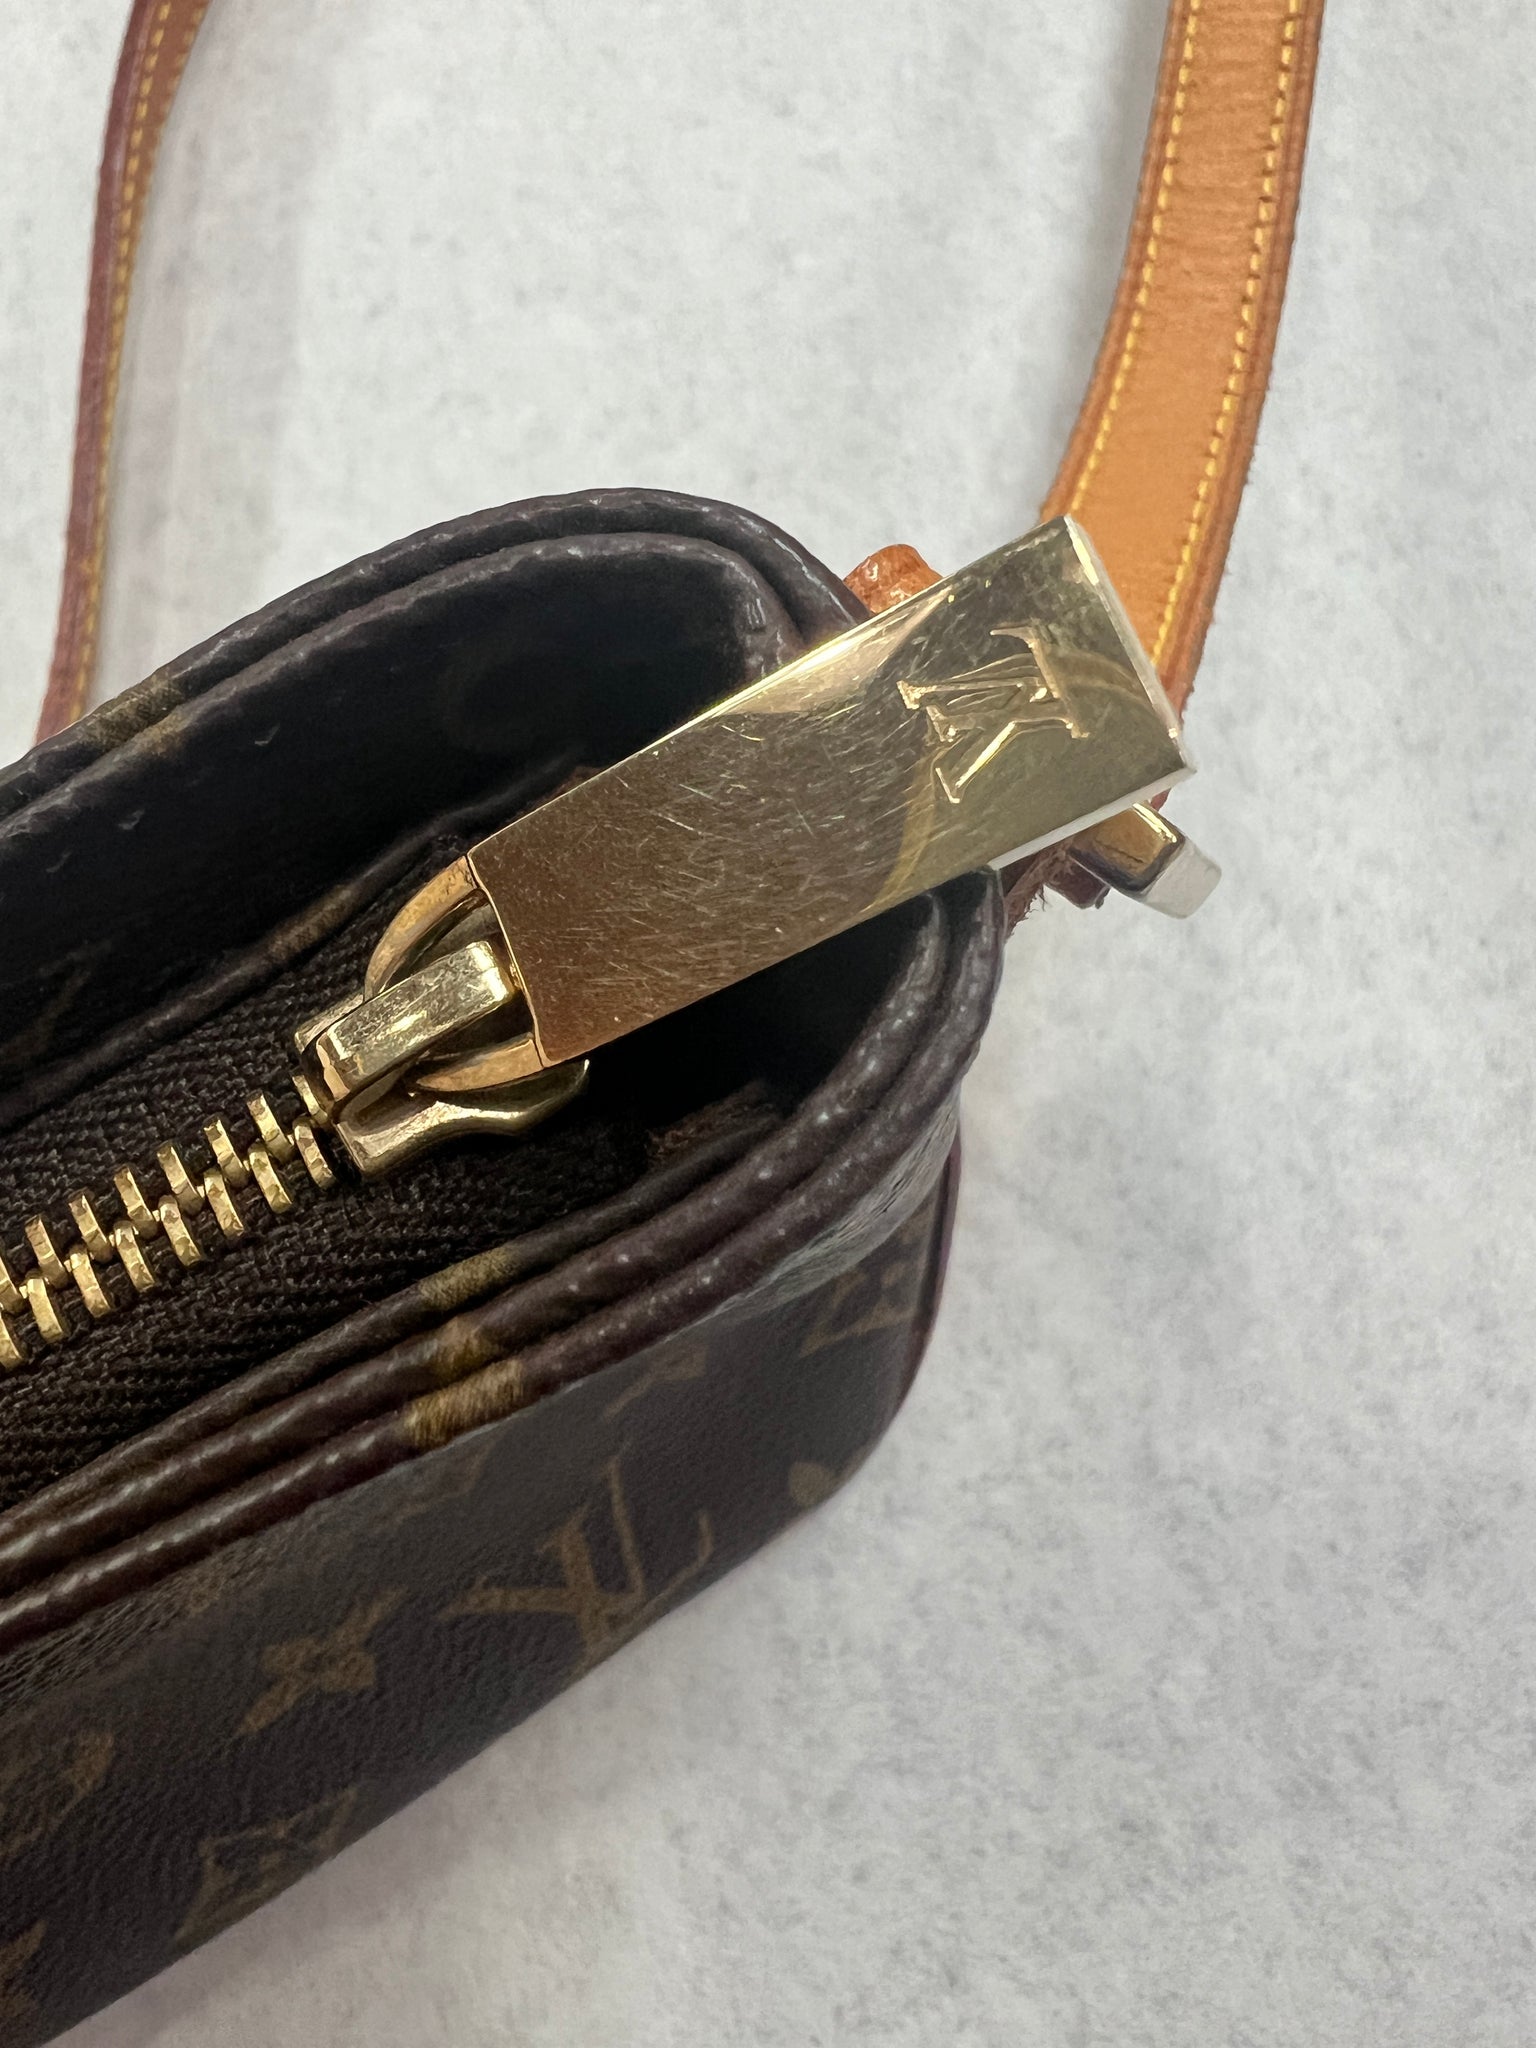 Louis Vuitton Monogram Trotteur Crossbody Bag 823lv29